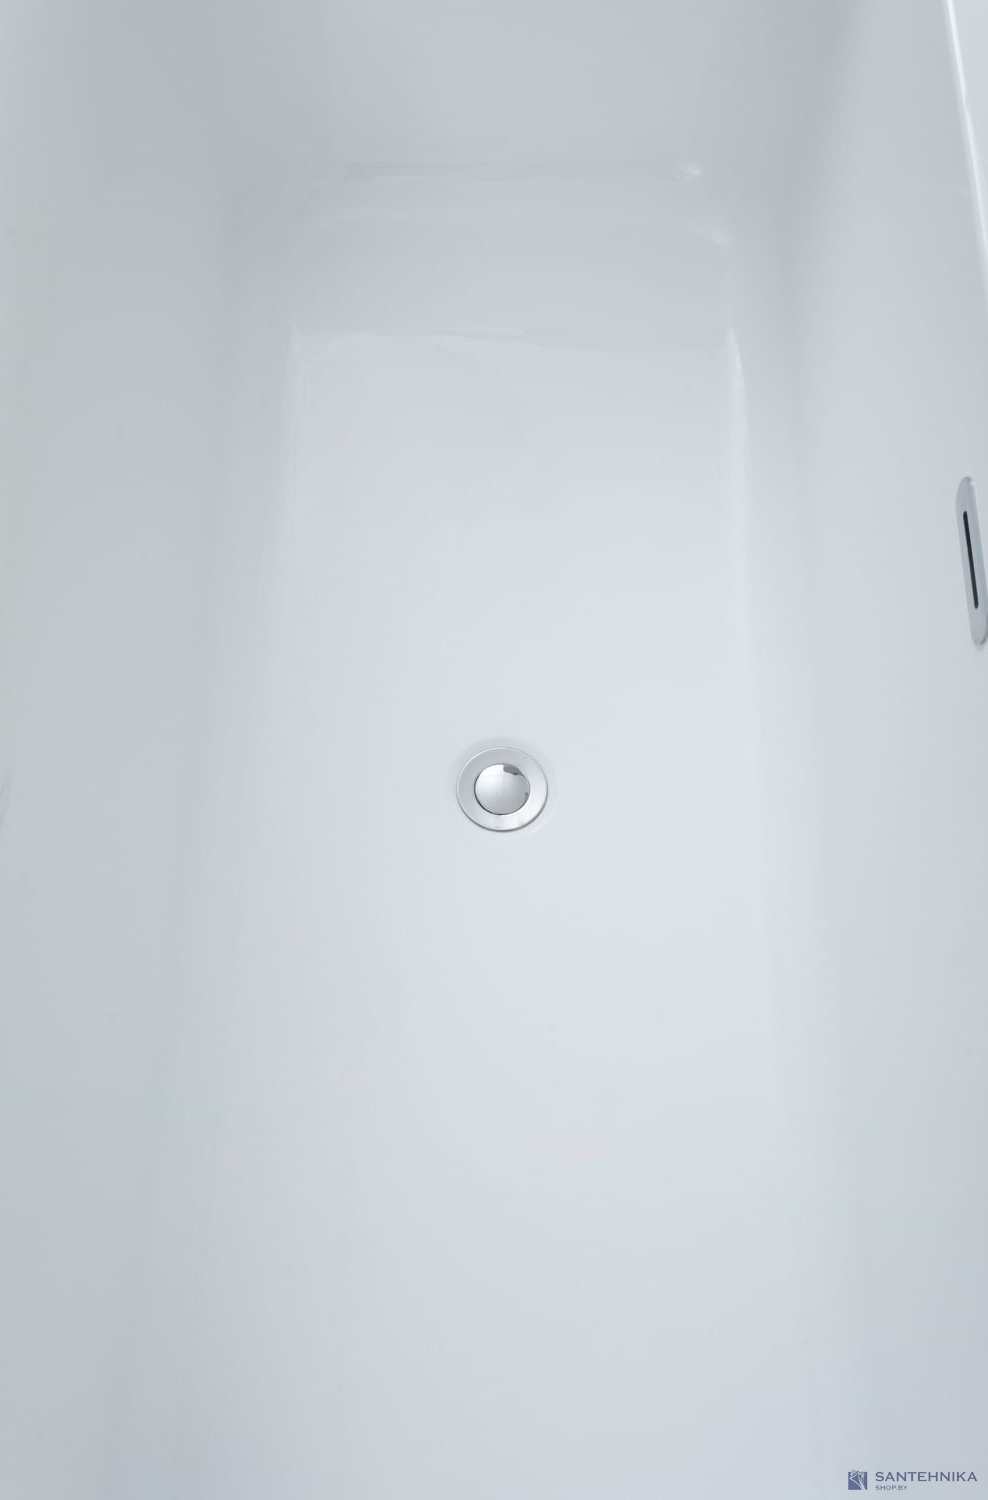 Акриловая ванна Allen Brau Infinity 2 170x78, белый глянец